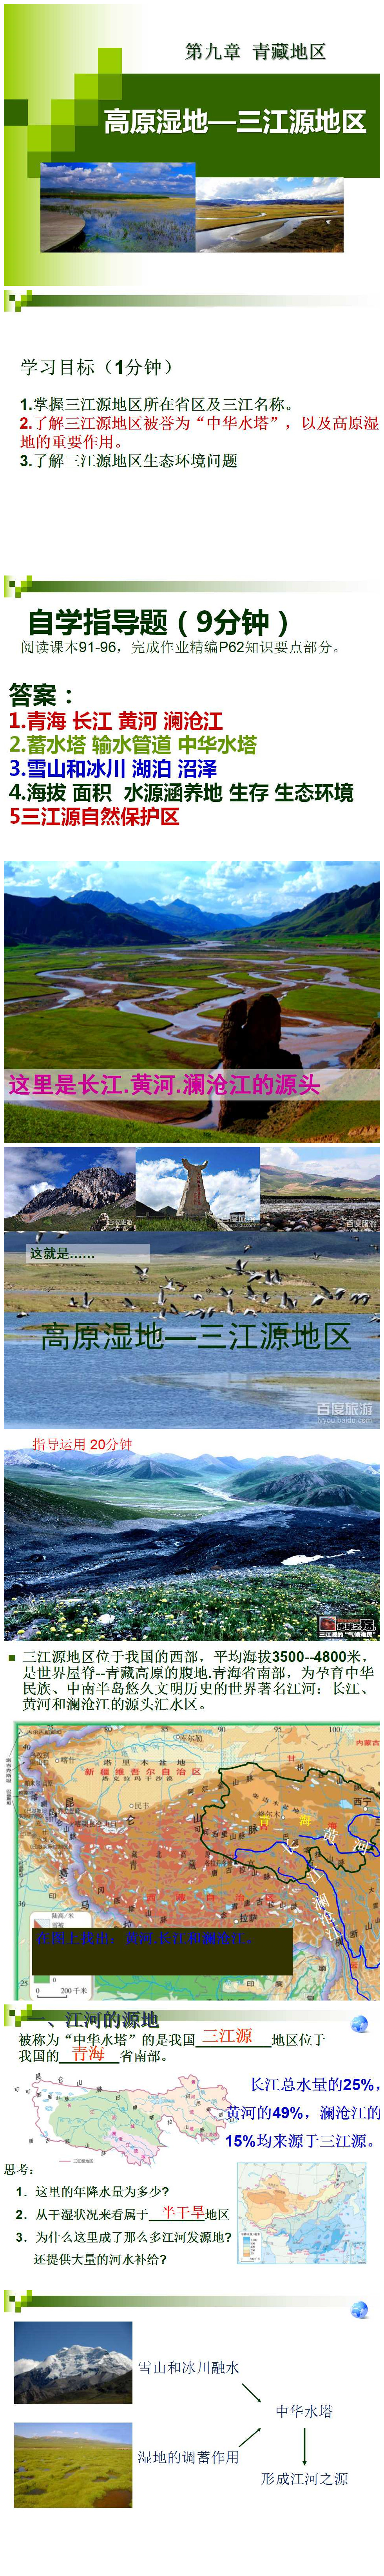 《高原湿地三江源地区》青藏地区PPT课件PPT课件下载